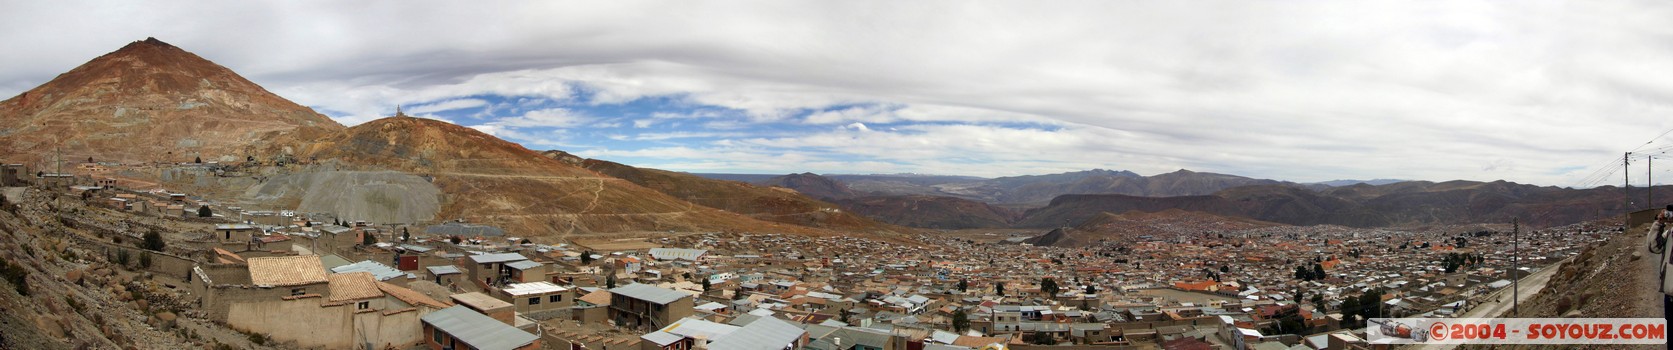 Panoramique sur Potosi et le Cerro Rico
Mots-clés: panorama